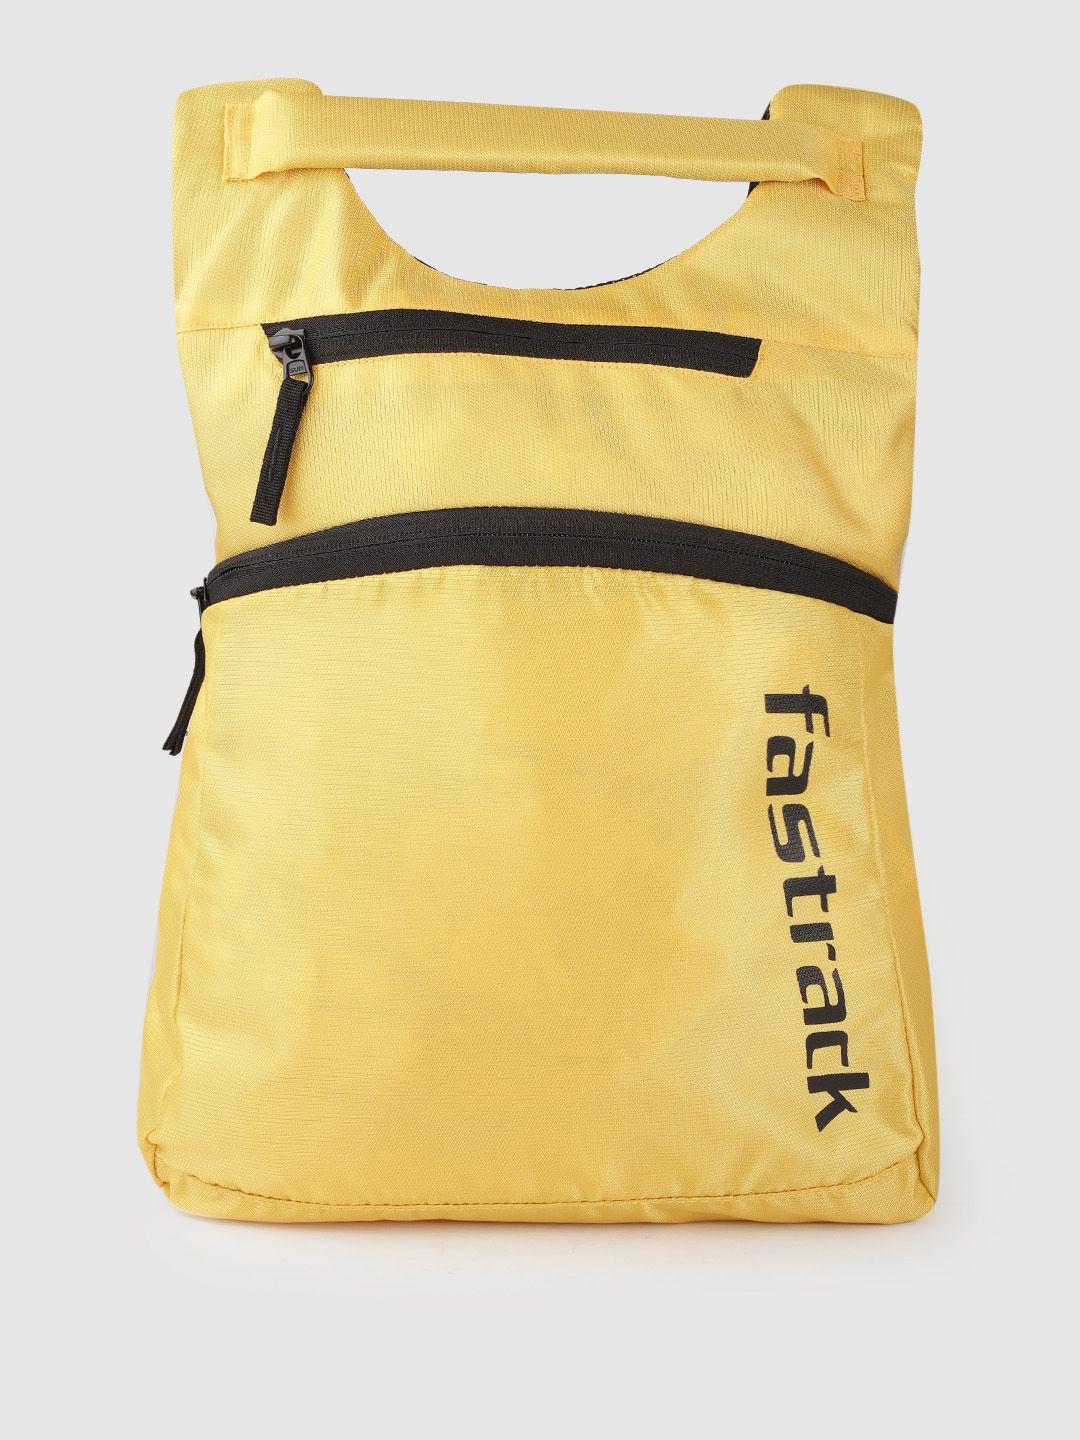 fastrack women brand logo print backpack